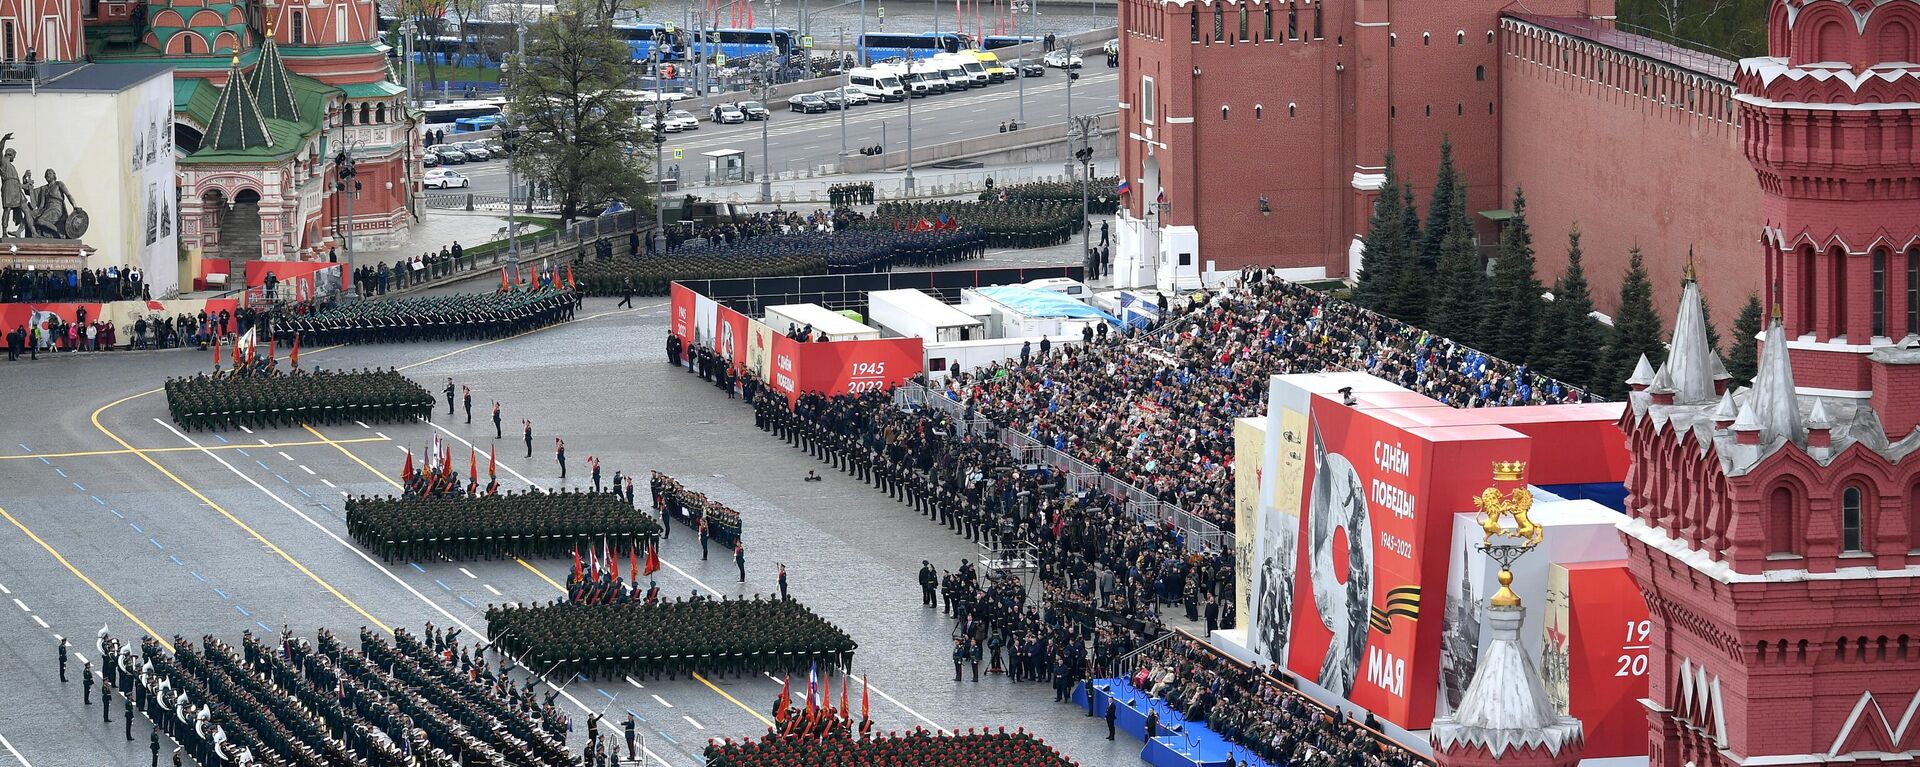 العرض العسكري بمناسبة الذكرى الـ77 لعيد النصر على الساحة الحمراء، موسكو، روسيا 9 مايو 2022 - سبوتنيك عربي, 1920, 21.11.2023